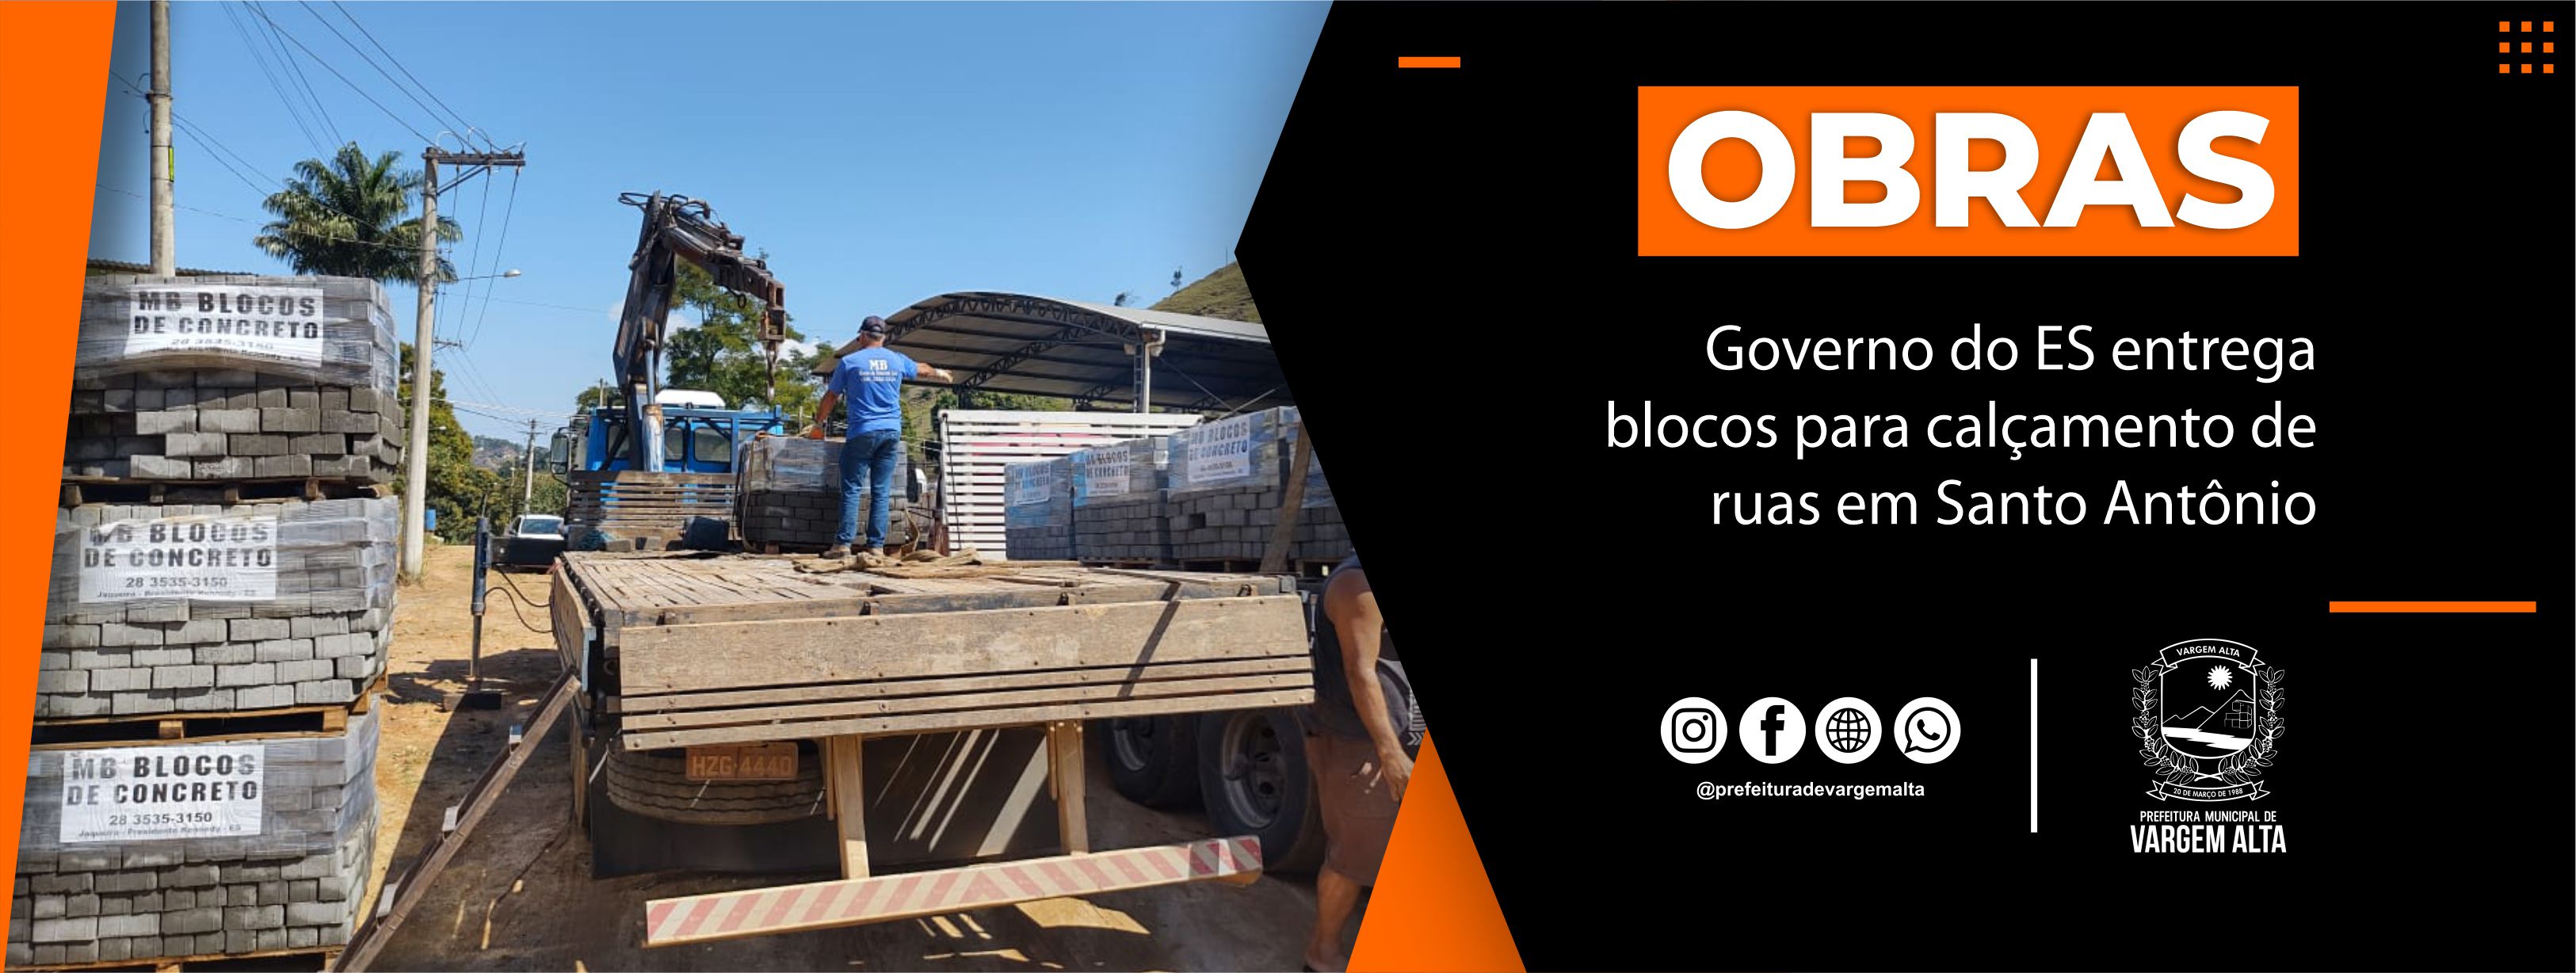 Governo do ES entrega blocos para calçamento de ruas em Santo Antônio